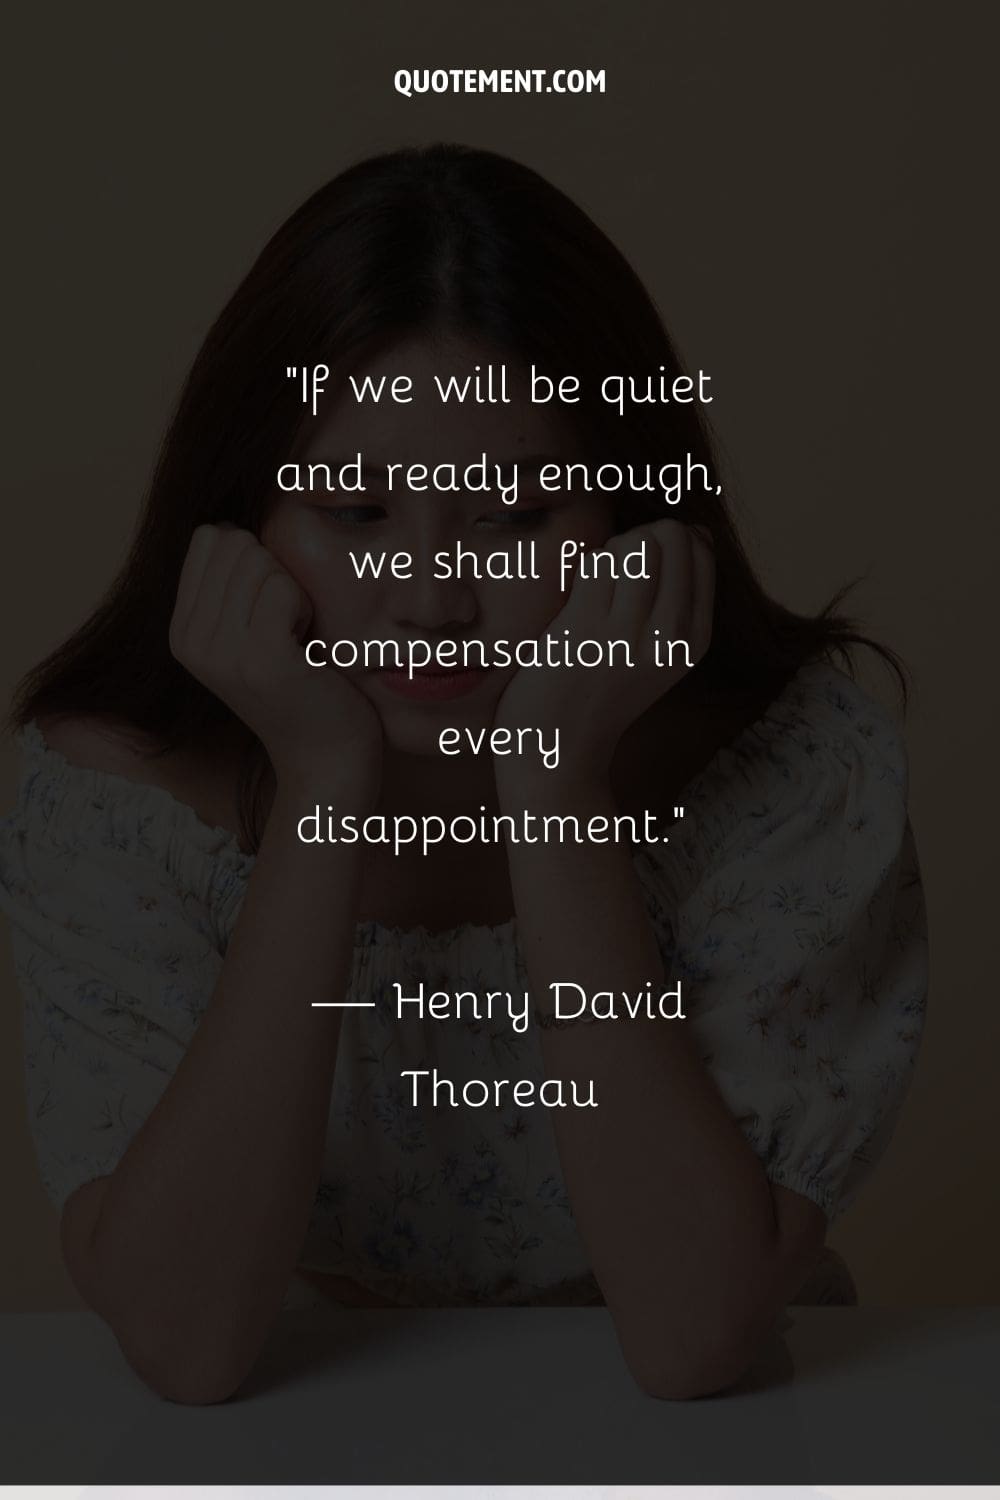 Si estamos tranquilos y preparados, encontraremos compensación en cada decepción...